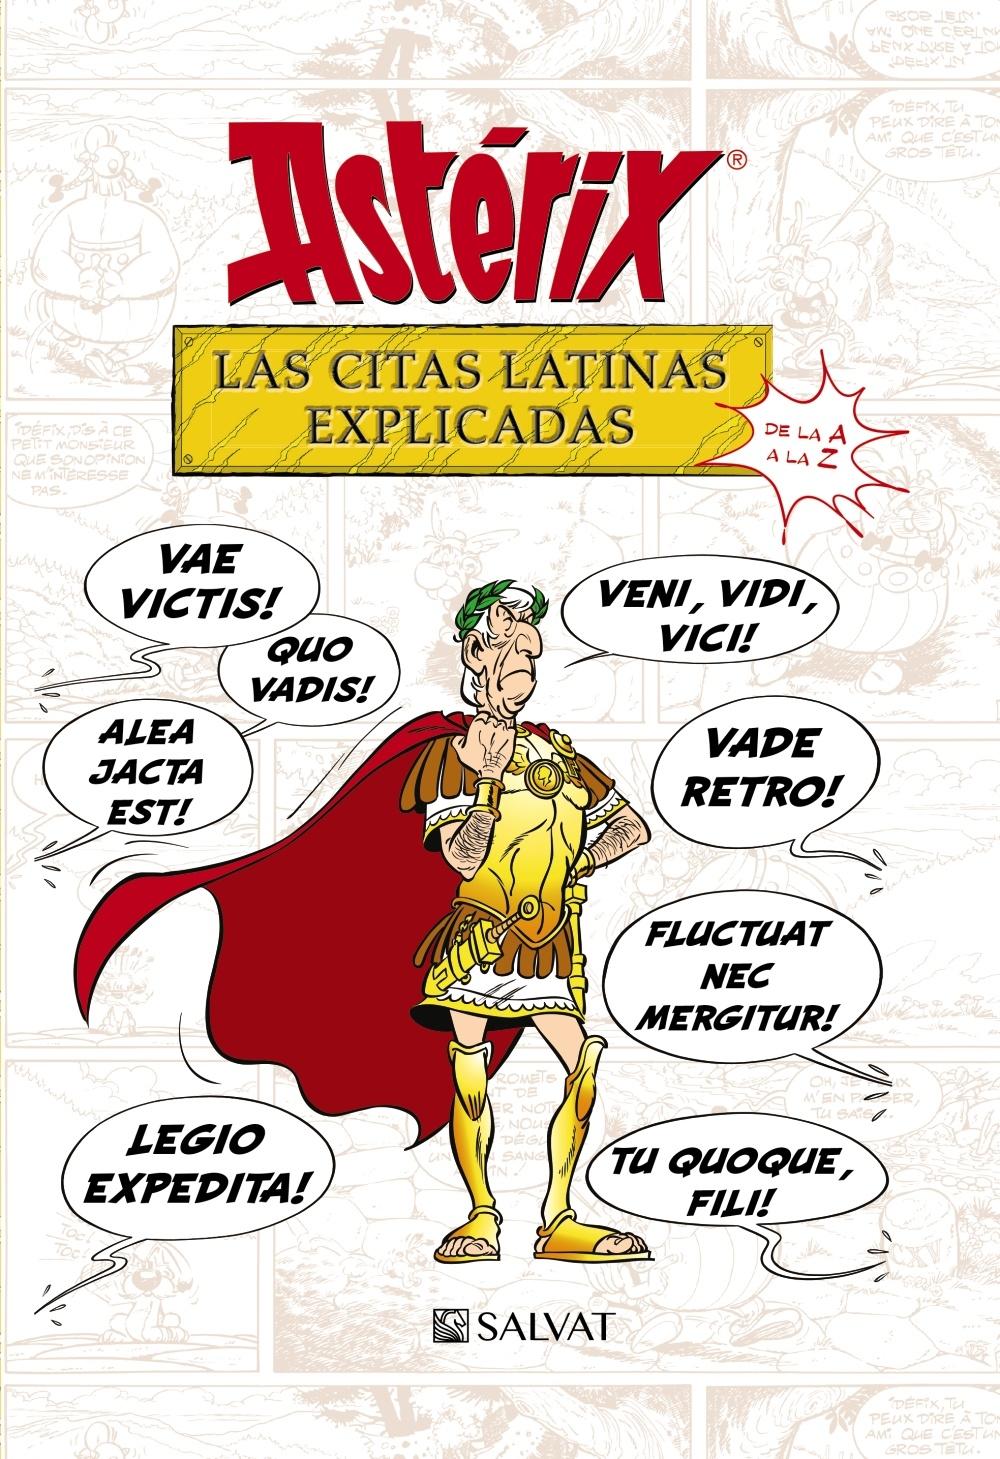 Astérix. Las citas latinas explicadas "De la A a la Z"